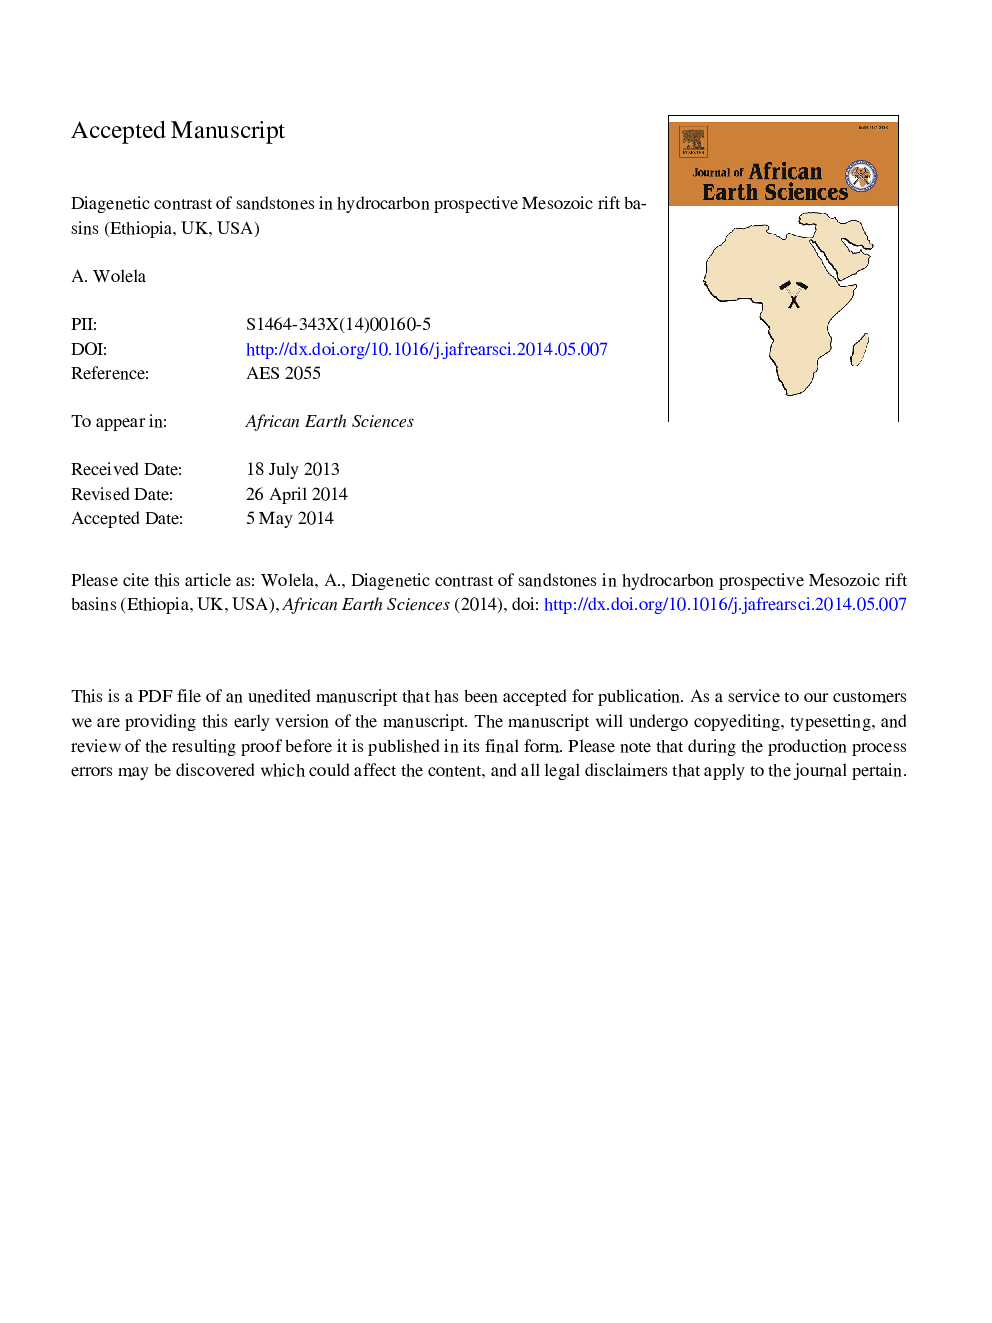 کنتراست دیگنتیک ماسه سنگ در حوضه های ریخت شناسی مزوزوئیک پیش بینی شده هیدروکربنی (اتیوپی، انگلستان، ایالات متحده آمریکا) 